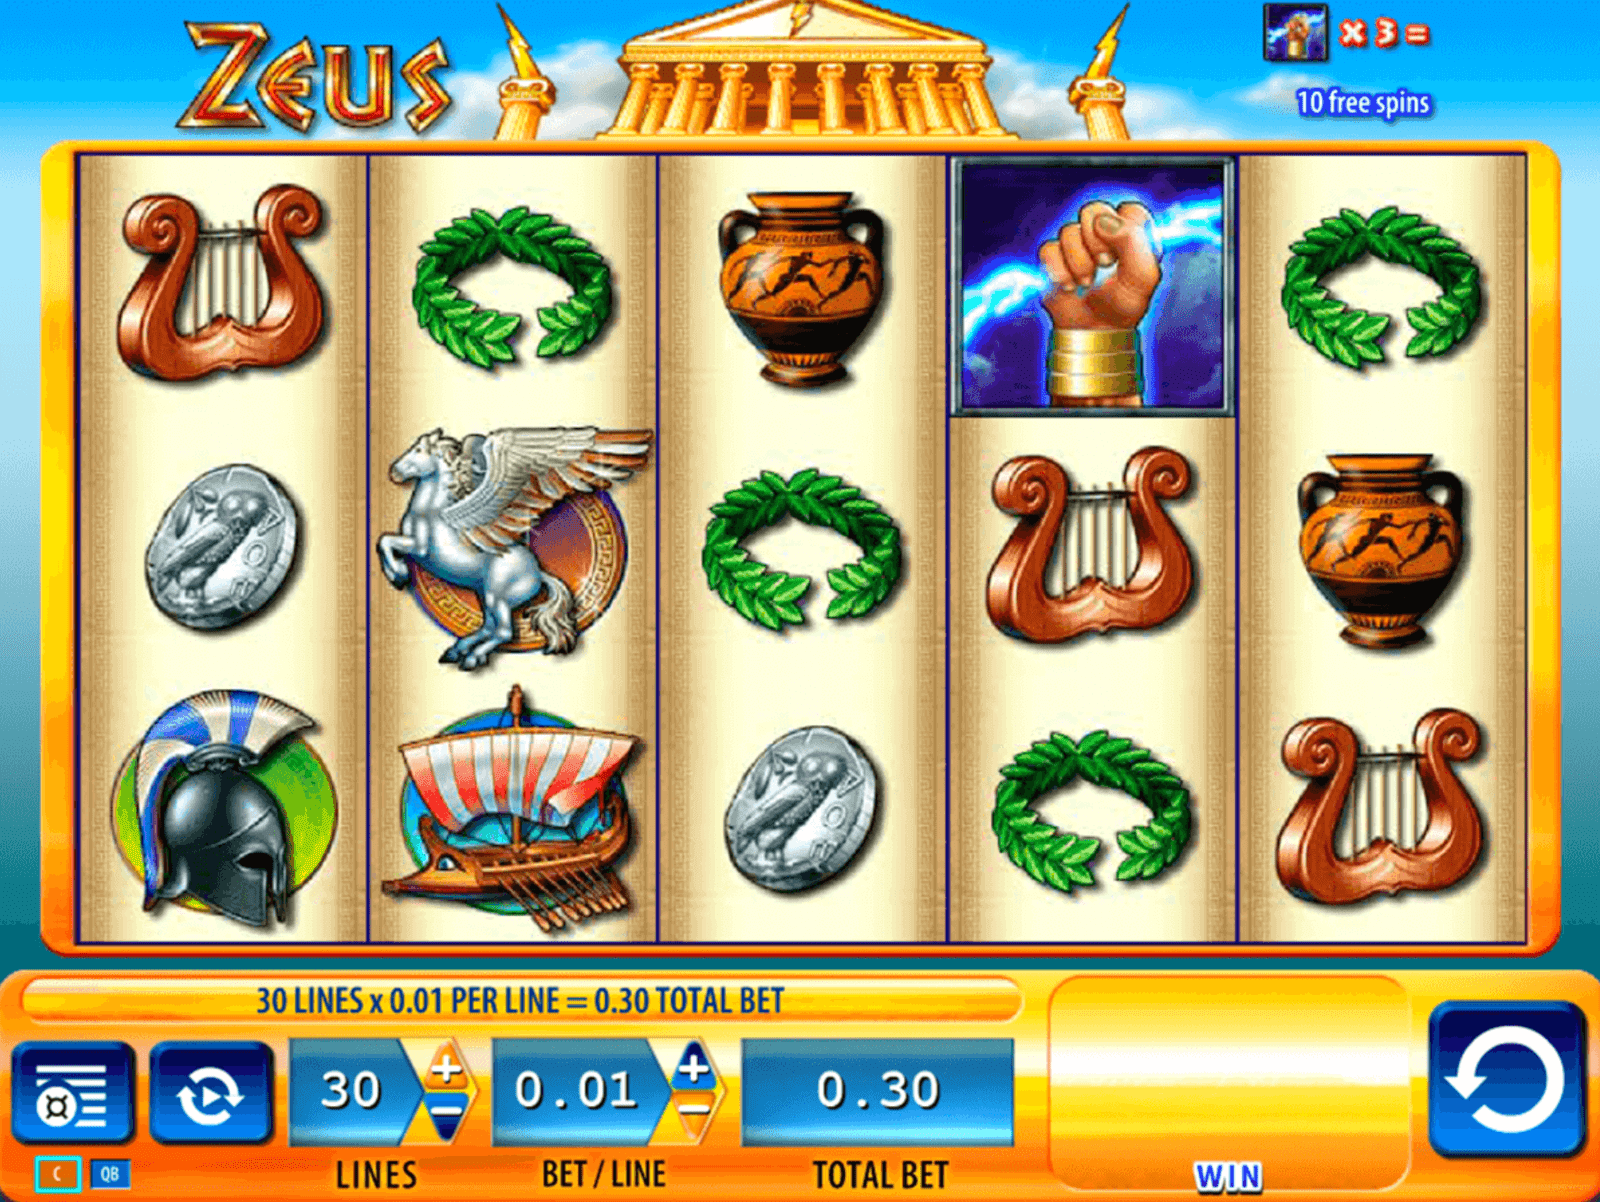 Jugar a la tragamonedas gratis Zeus de WMS en casinos online